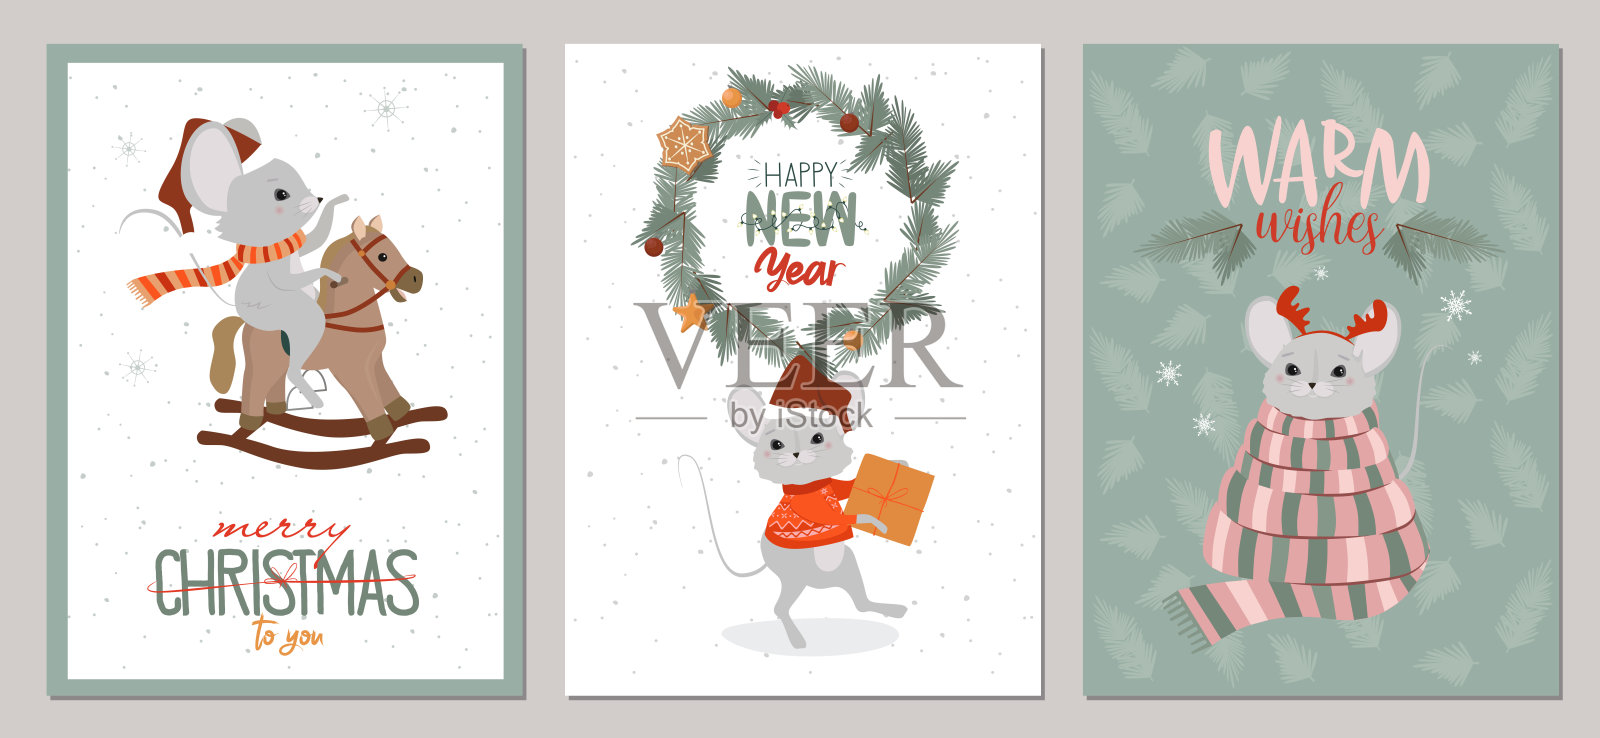 一套可爱的鼠标和节日元素圣诞及新年贺卡设计模板素材